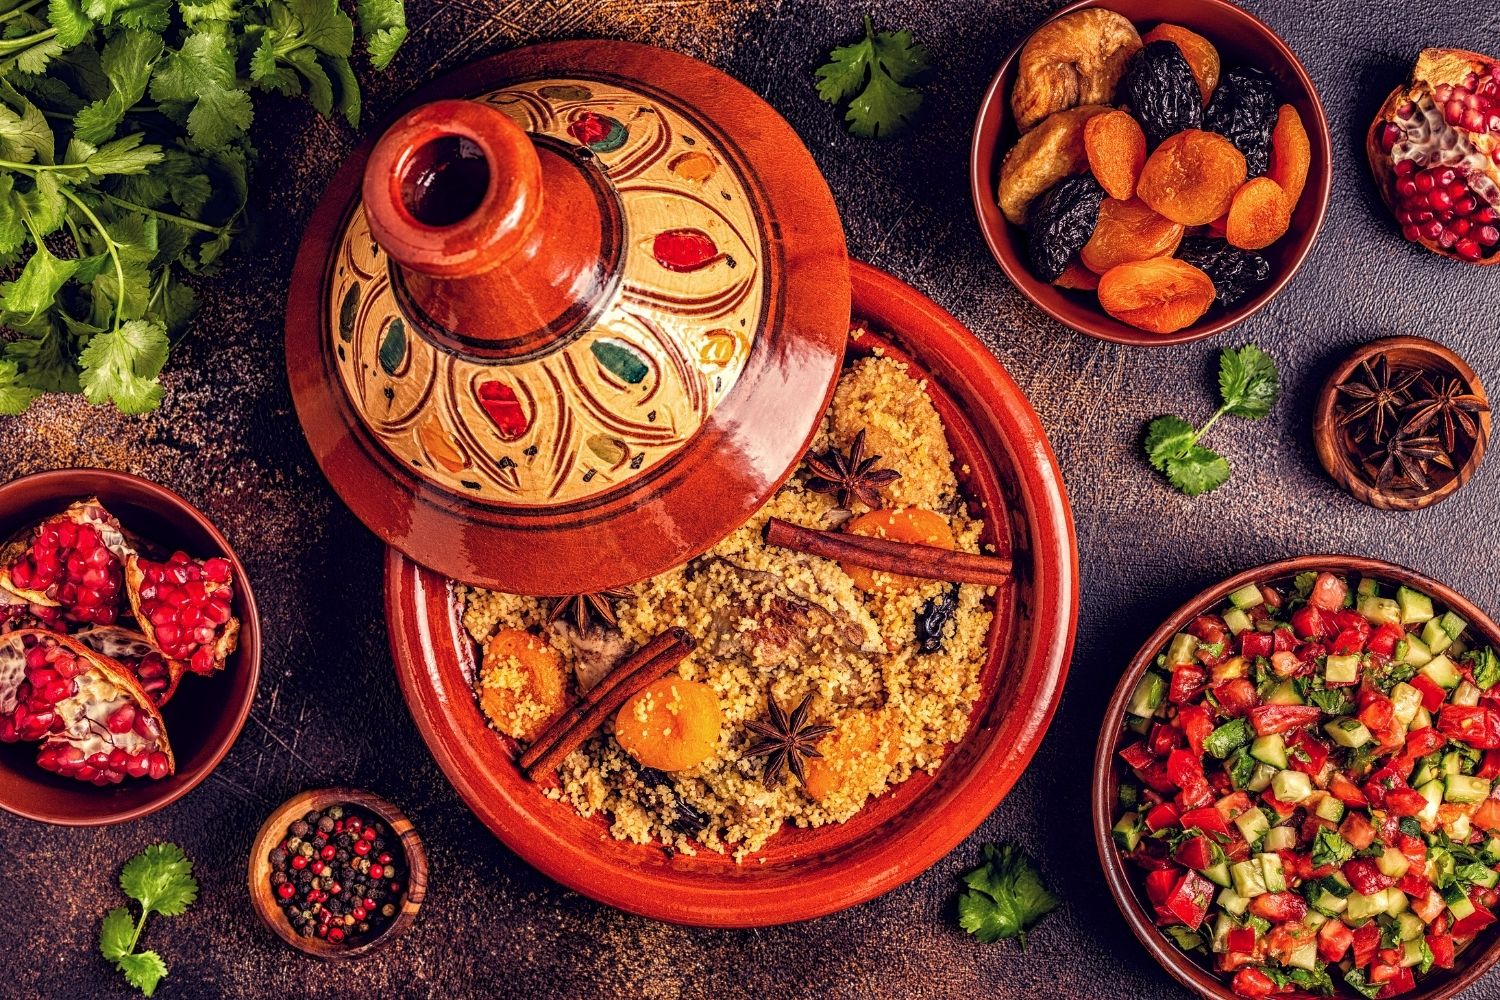 The Bedouins Restaurant Moroccan Food